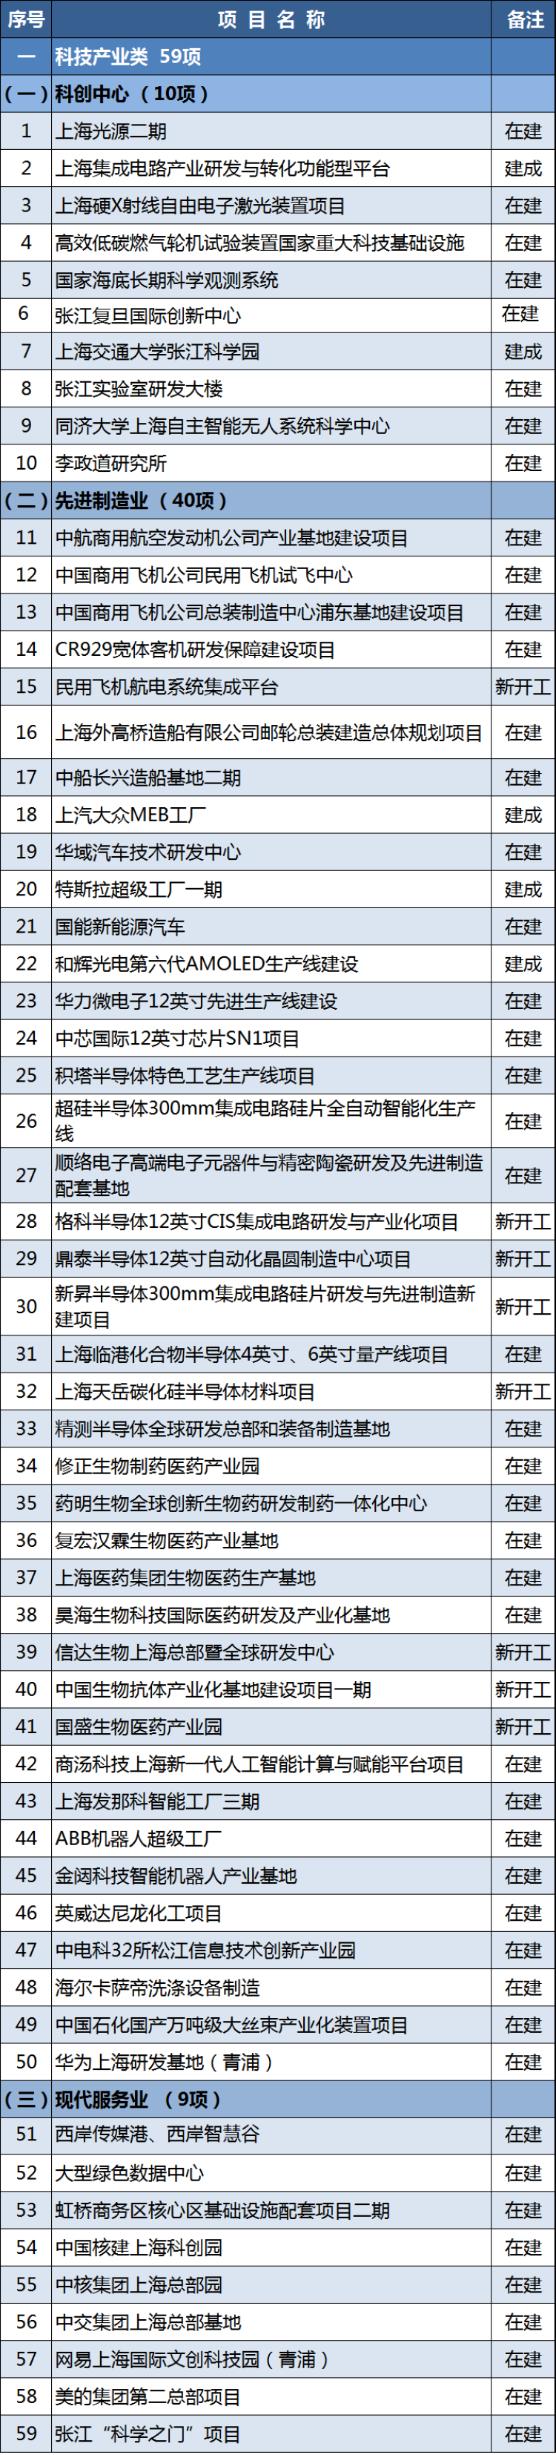 2021年上海市重大建设项目清单公布！ 快来看看有没有你关心的建设项目吧~